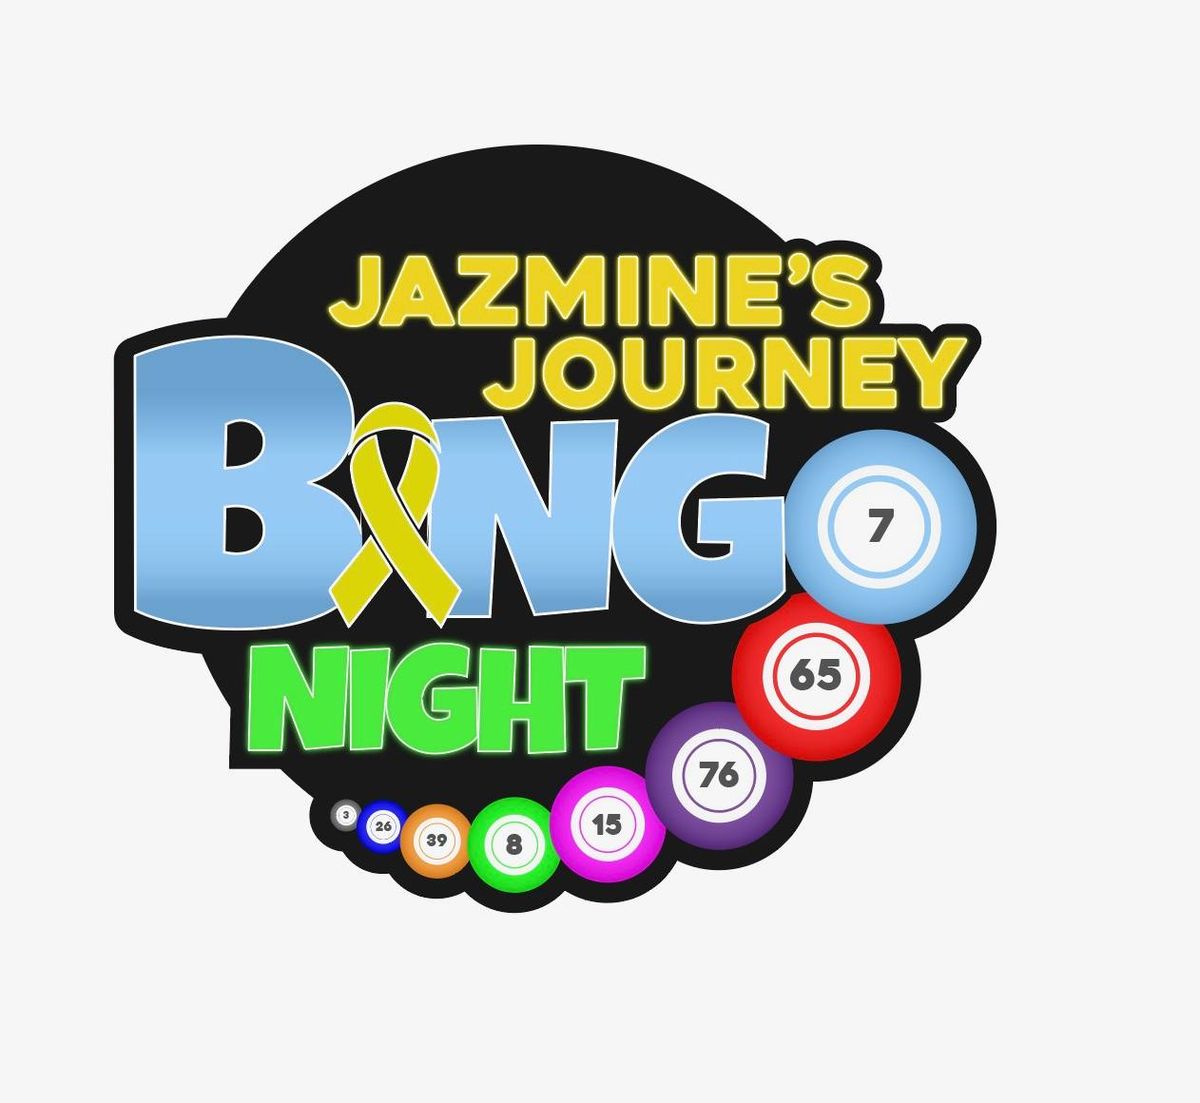 Jazmine's Journey Bingo Night